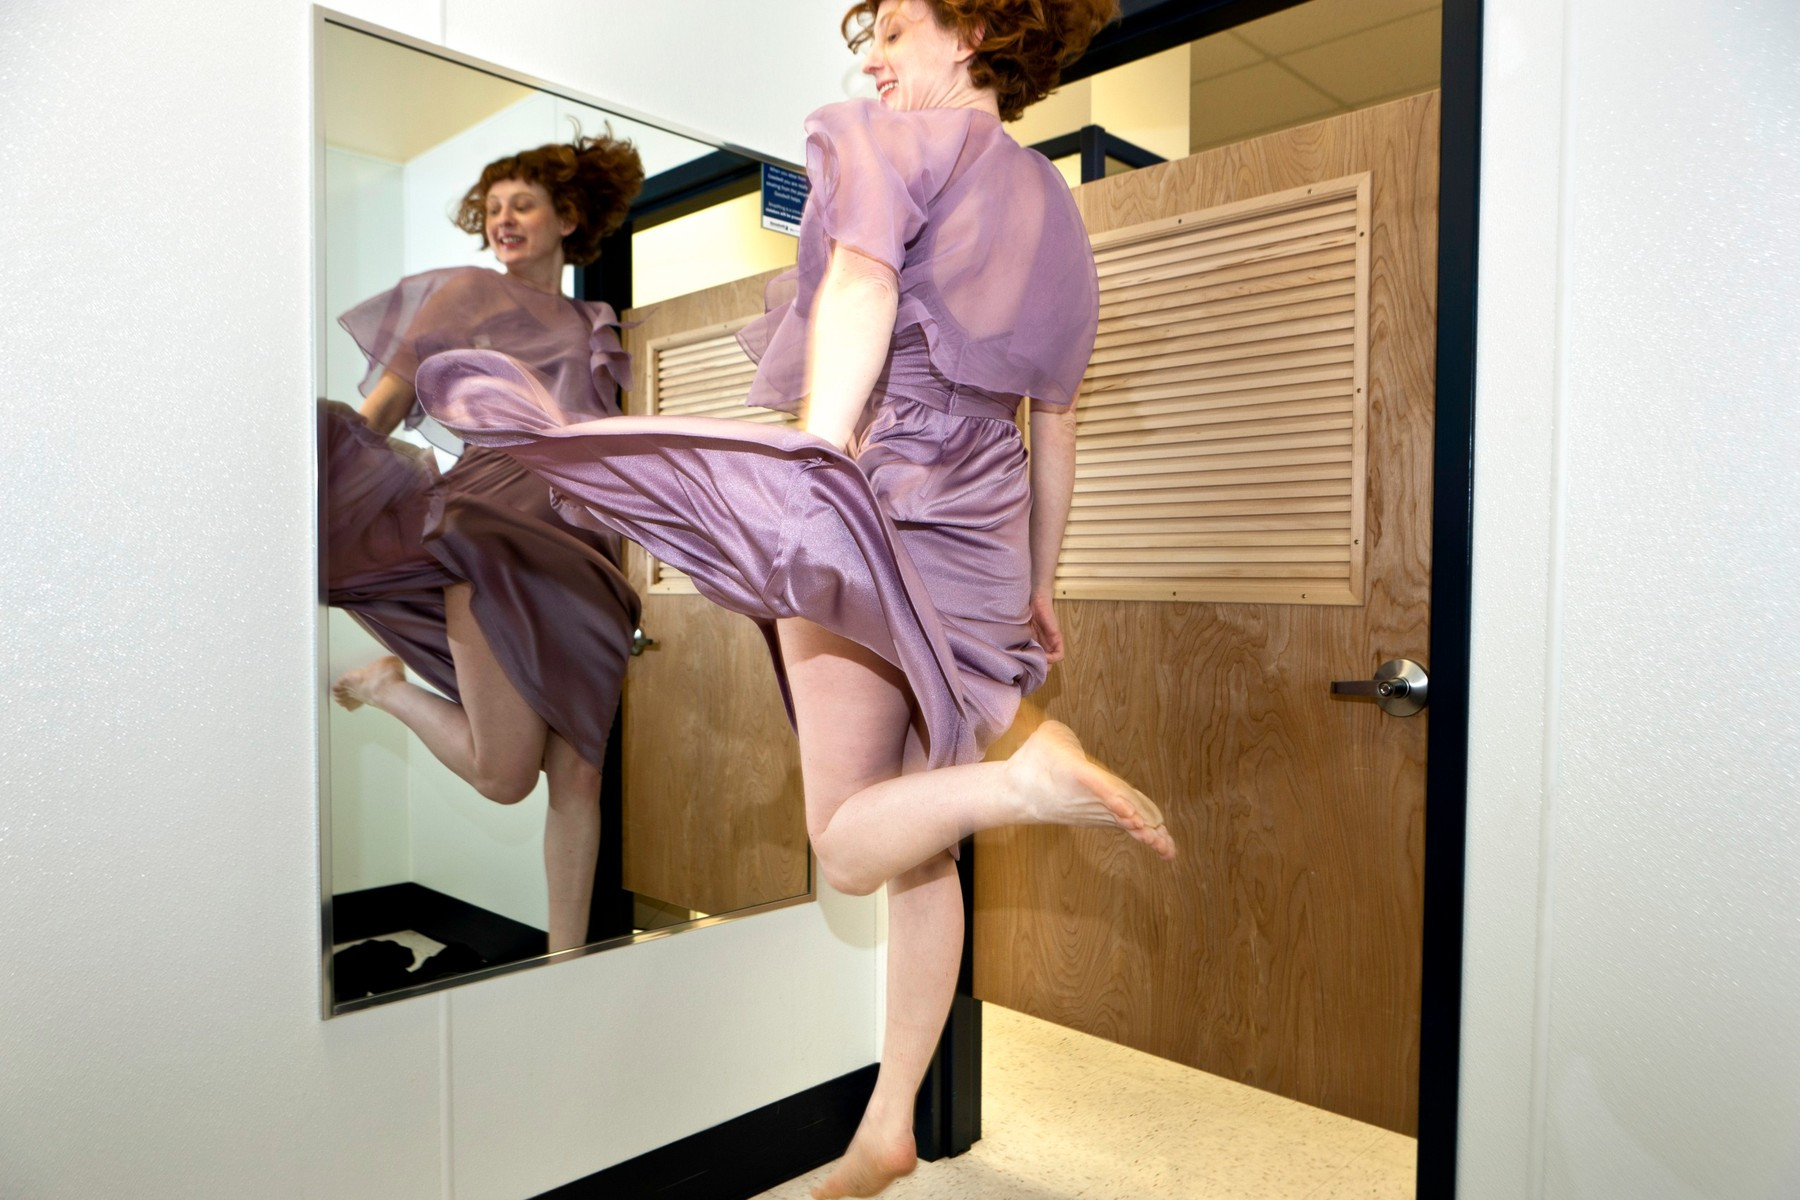 Devojka skače pred ogledalom